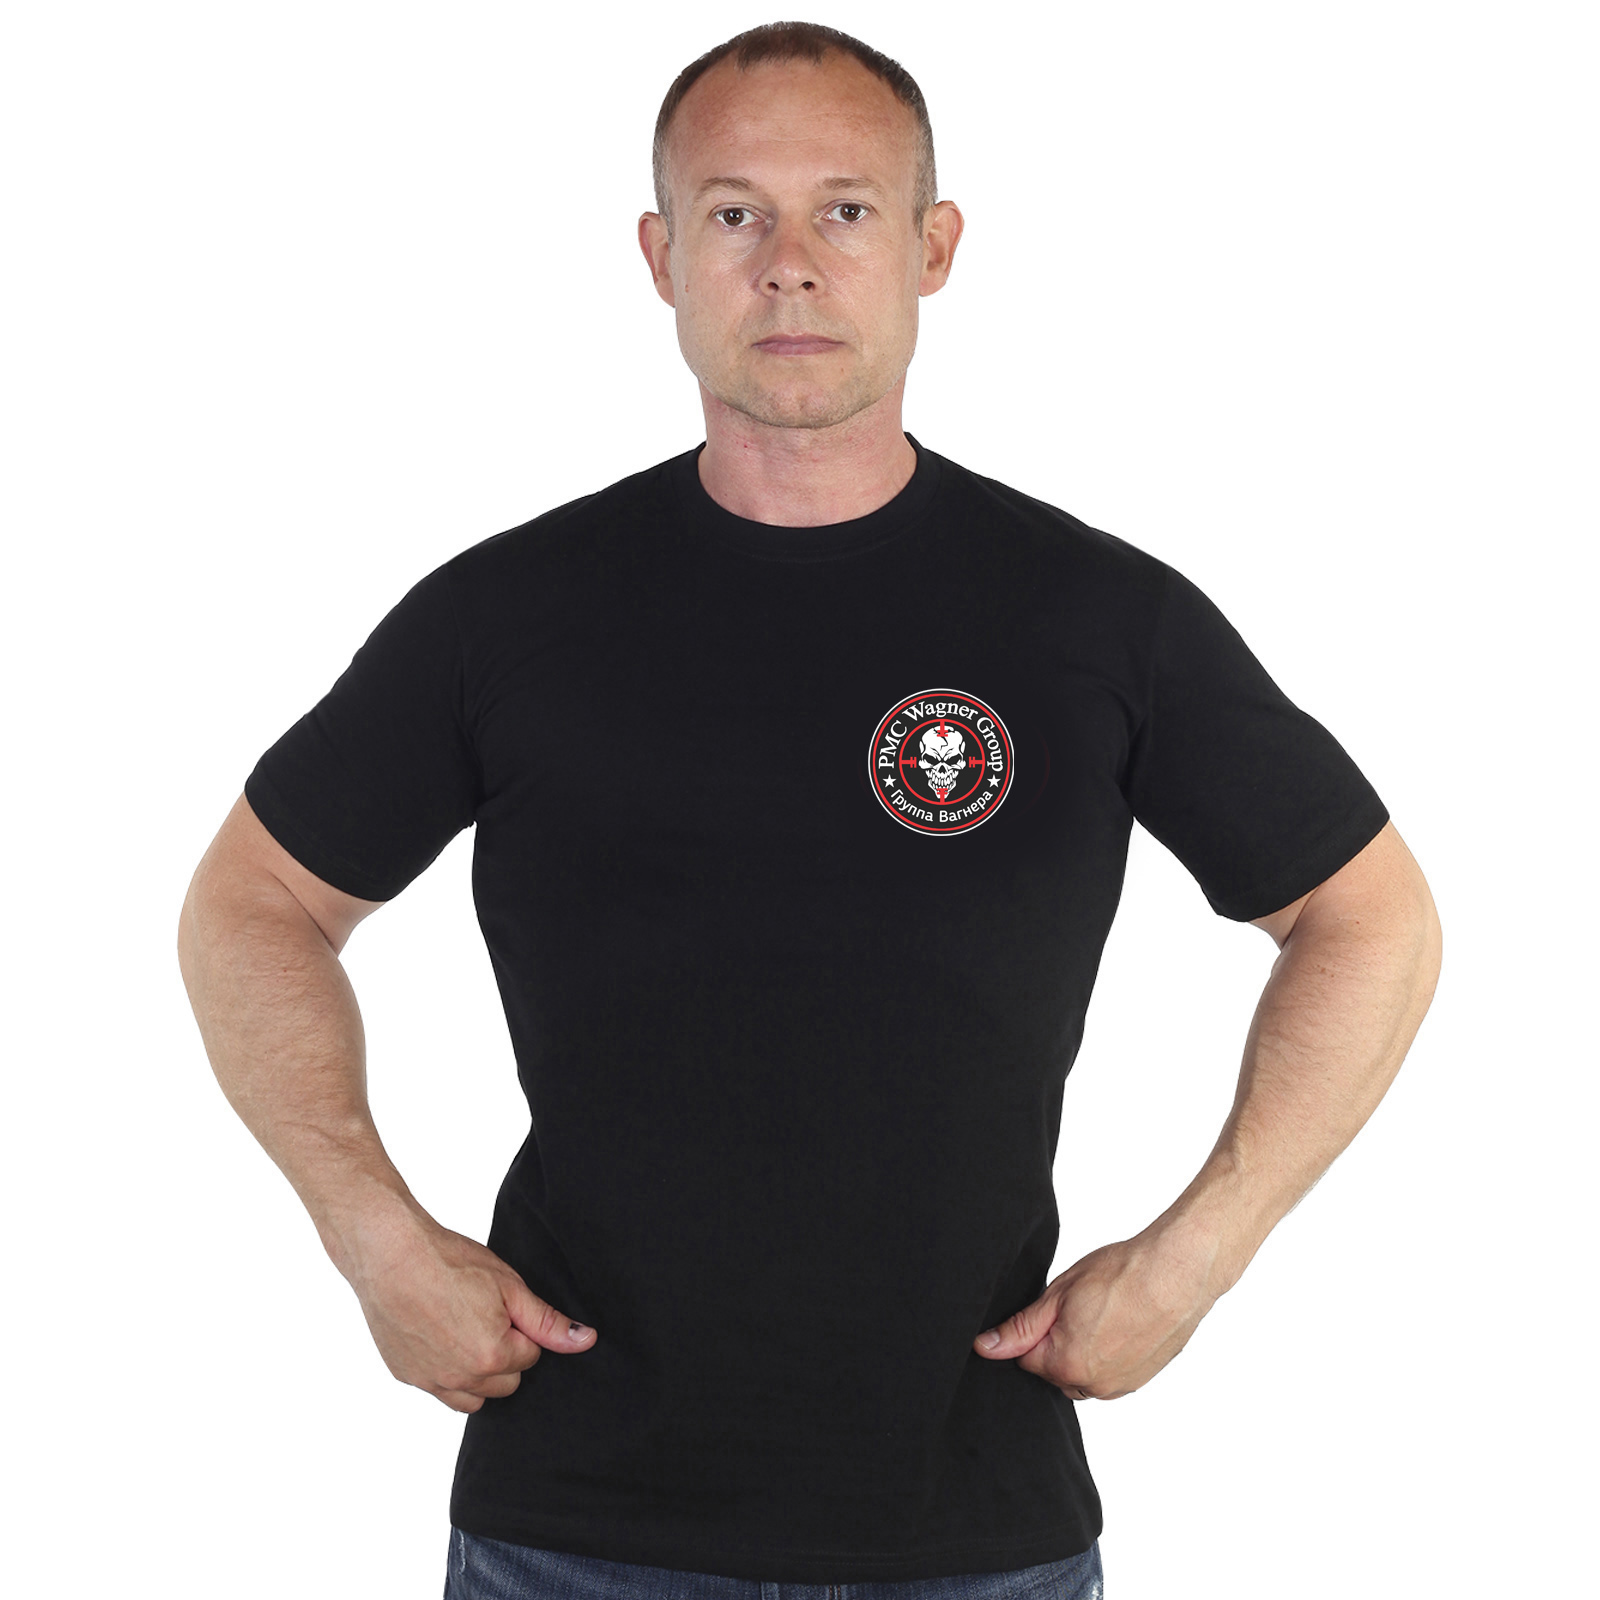 Чёрная футболка с термотрансфером "Группа Вагнера"